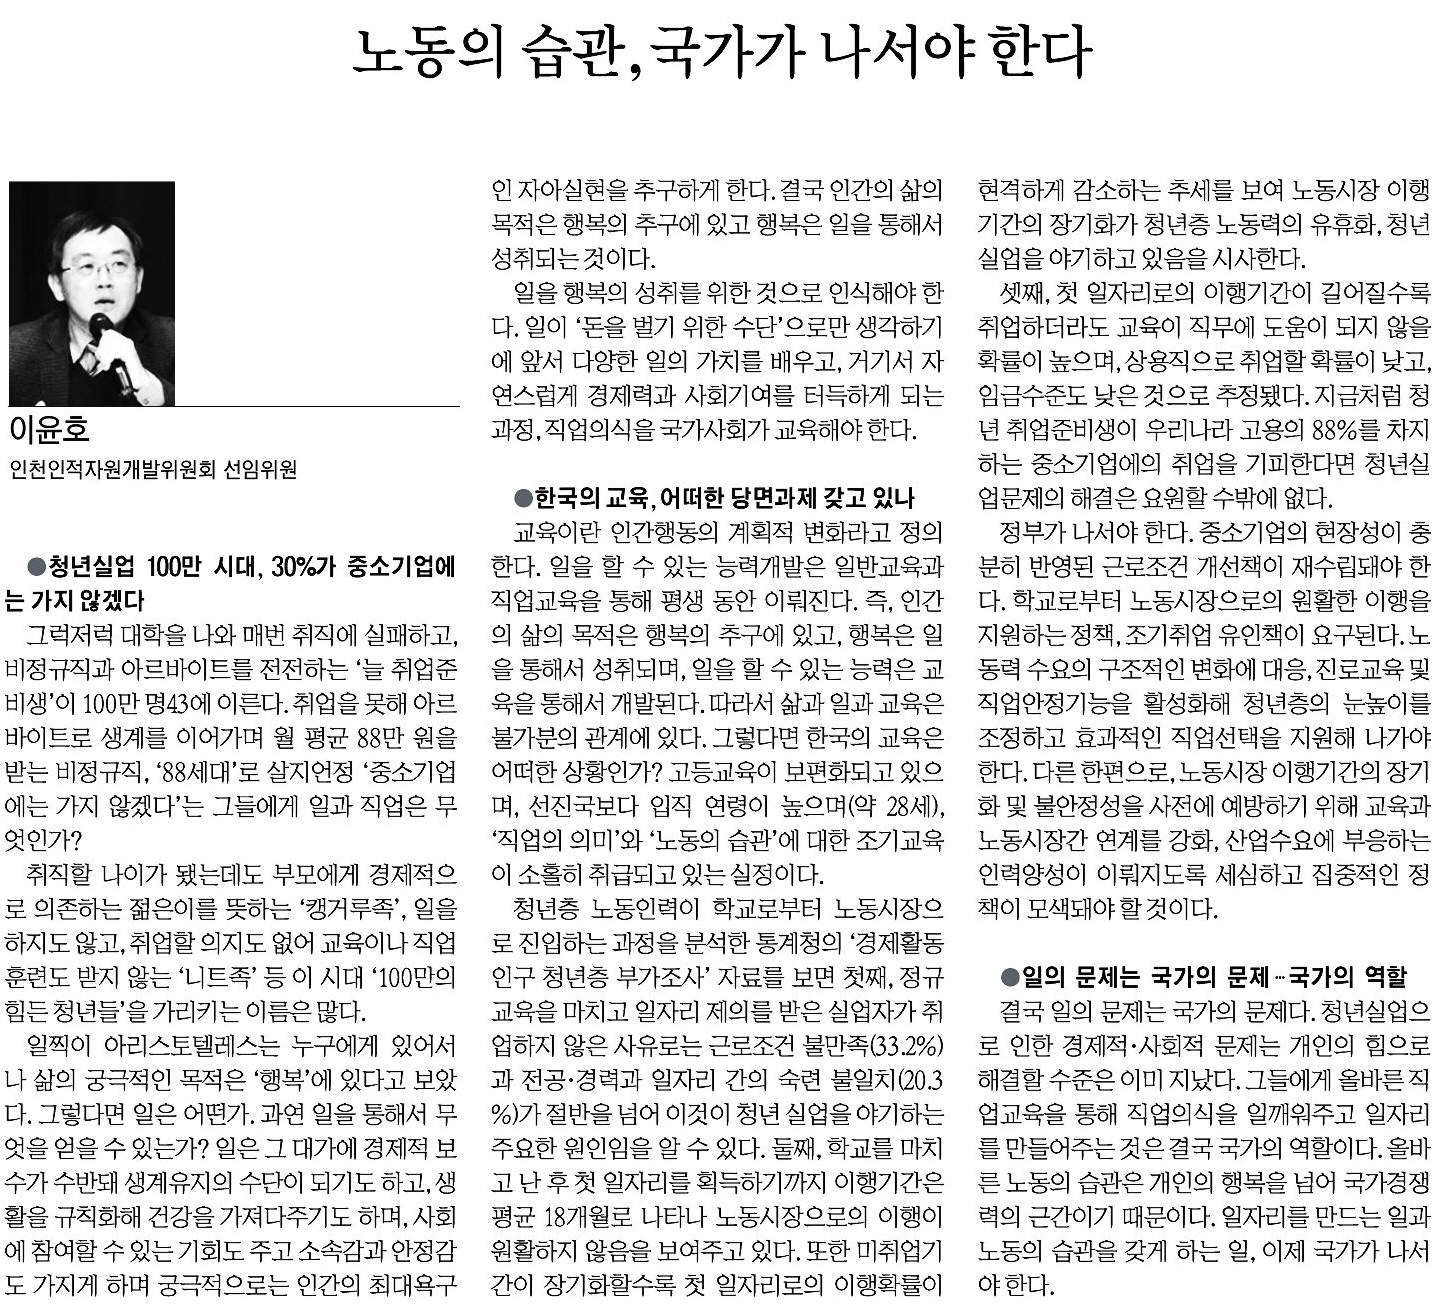 170124 (인천일보) 기고문(이윤호 선임위원)의 1번째 이미지